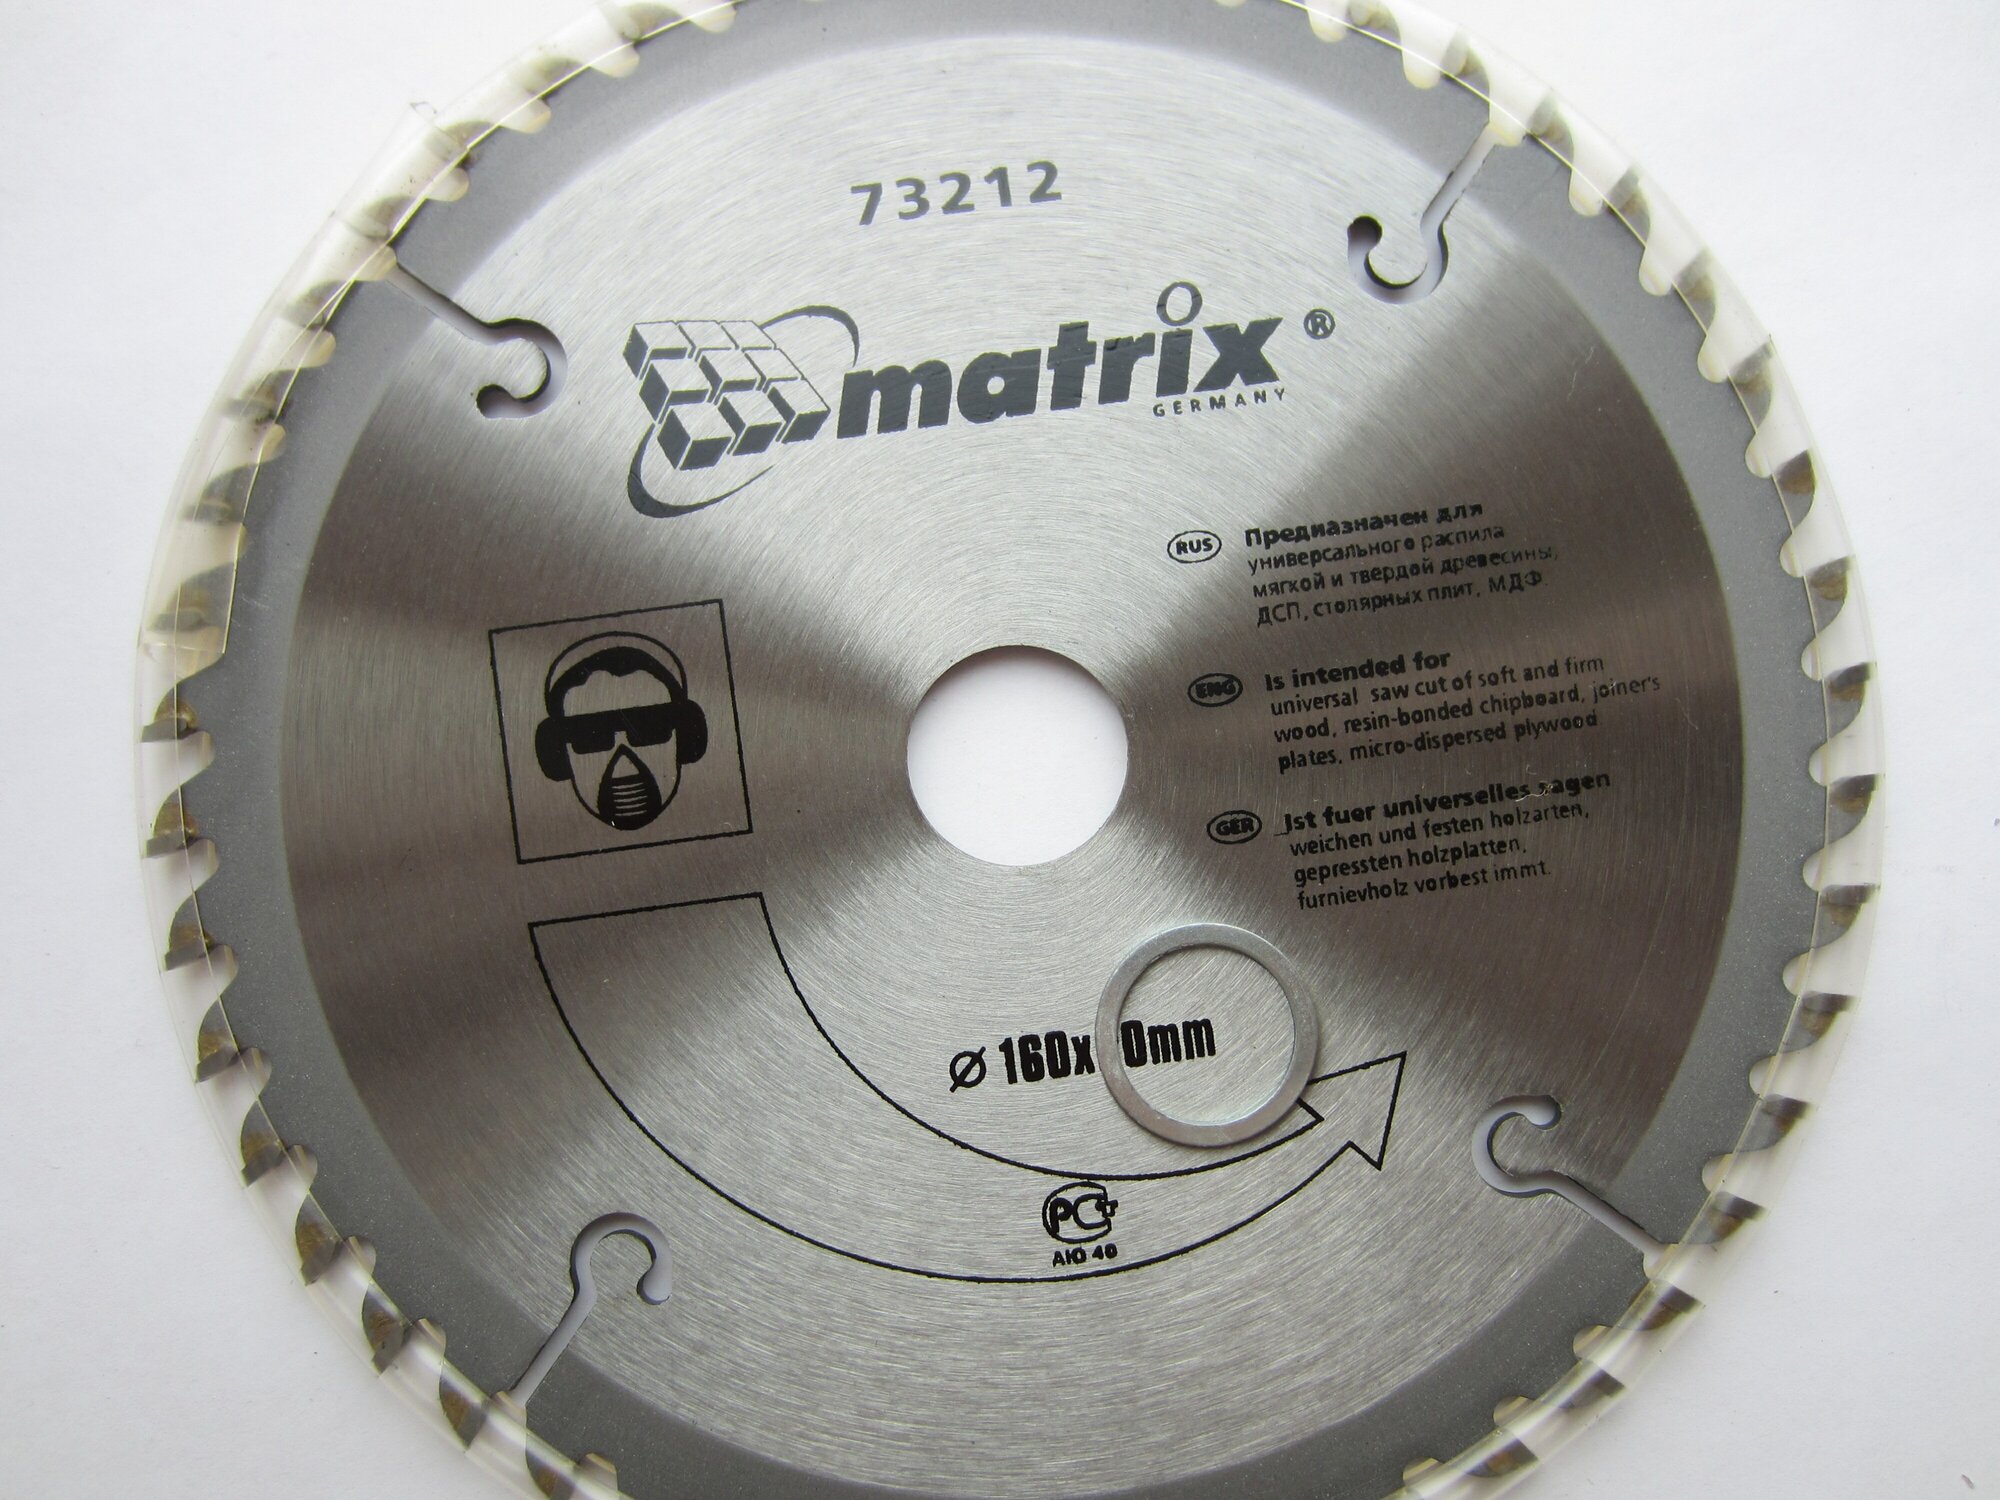 Пильный диск matrix Professional 73212 160х20 мм